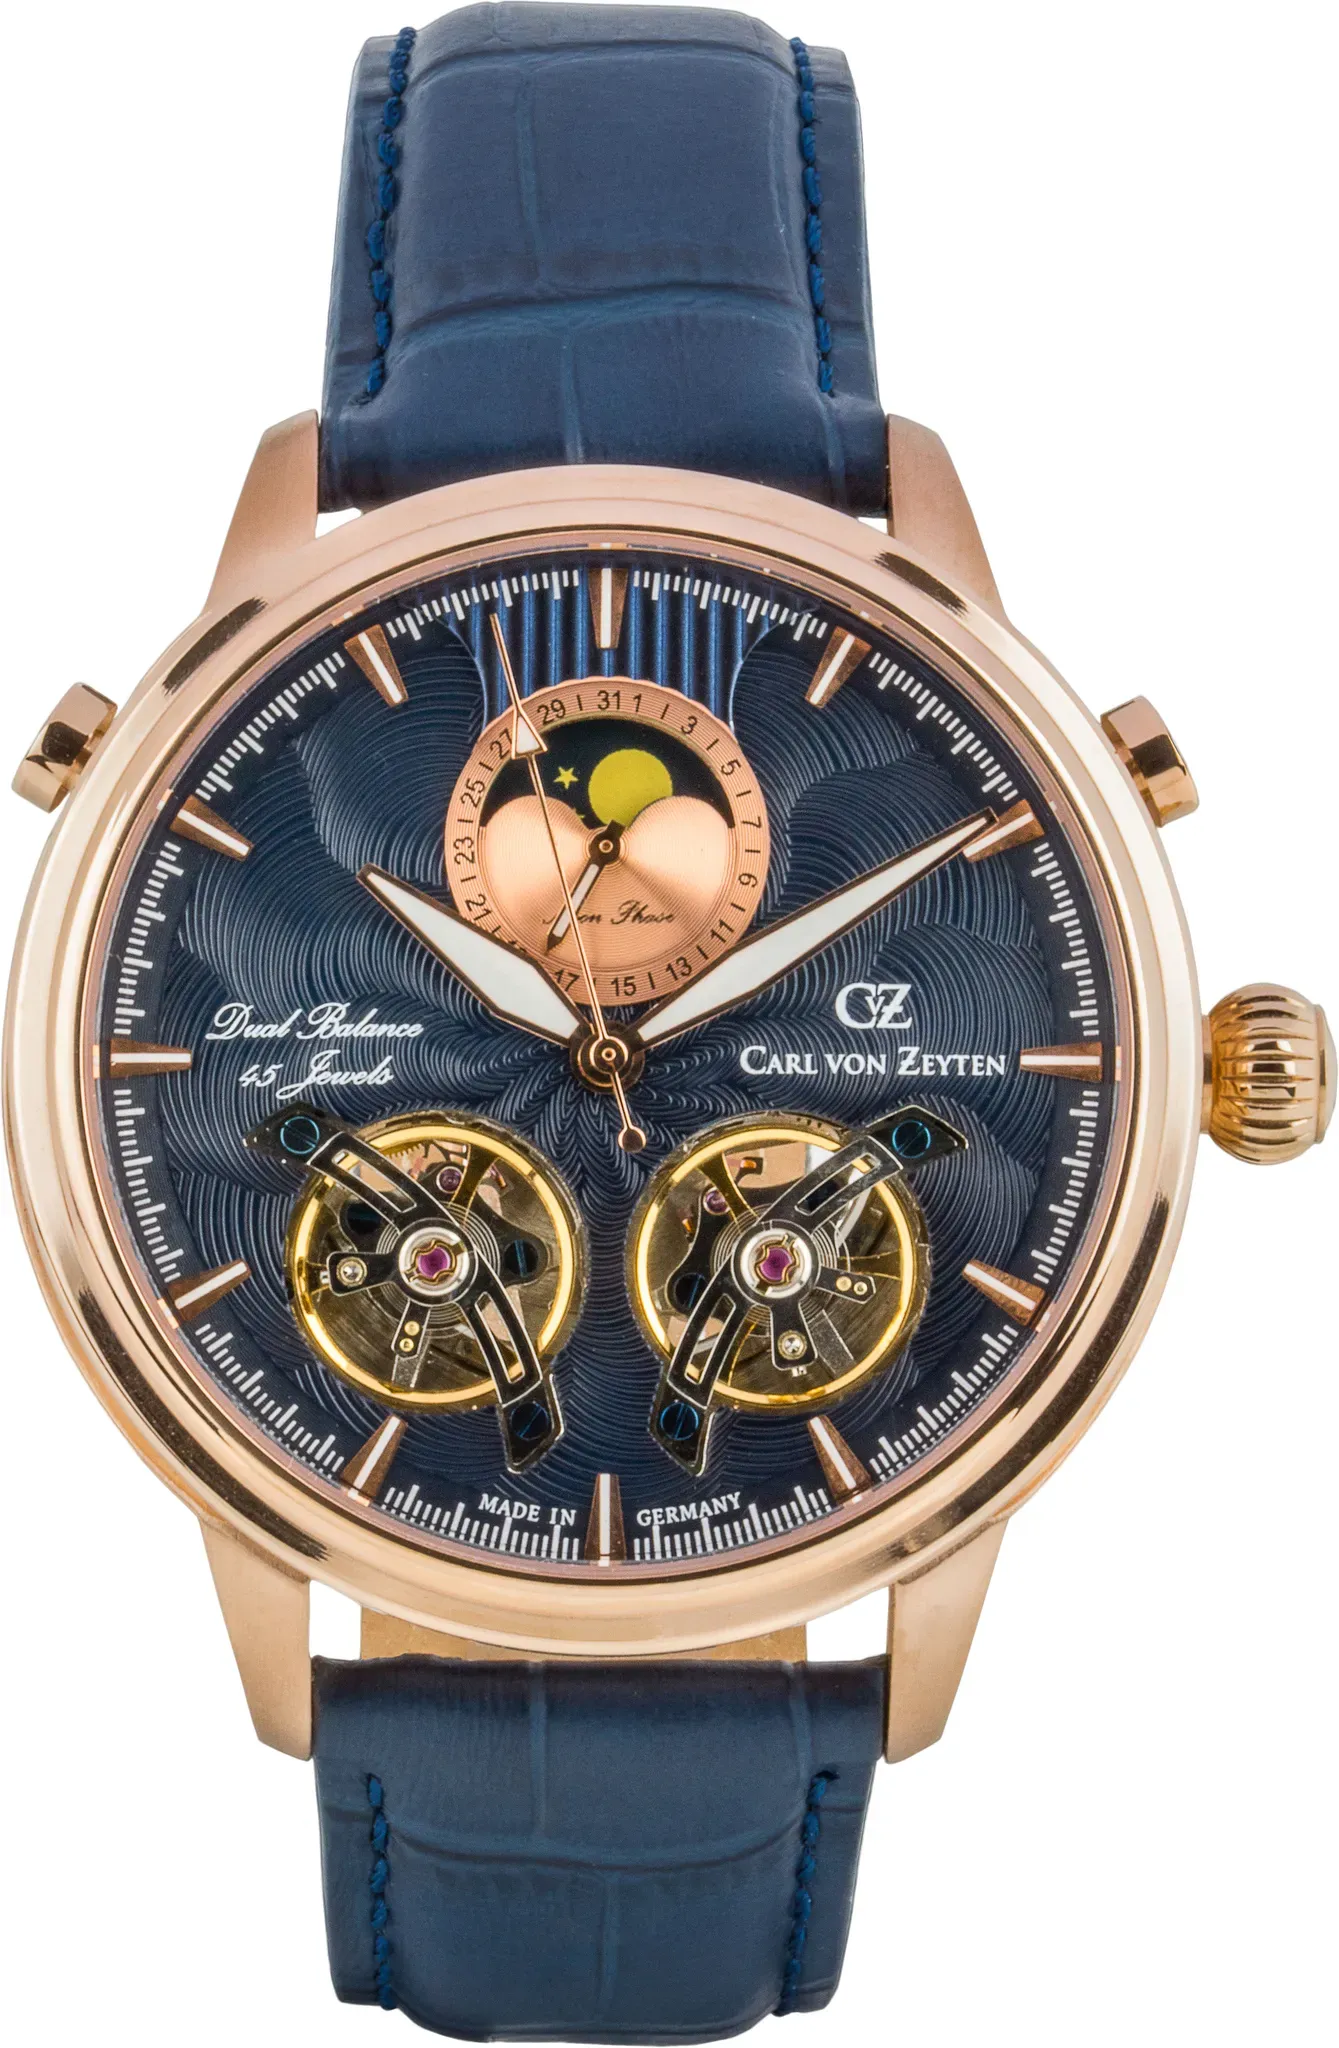 Automatikuhr CARL VON ZEYTEN "Durbach" Armbanduhren blau Herren Uhren Armbanduhr, mechanische Uhr, Herrenuhr, Datum, Made in Germany